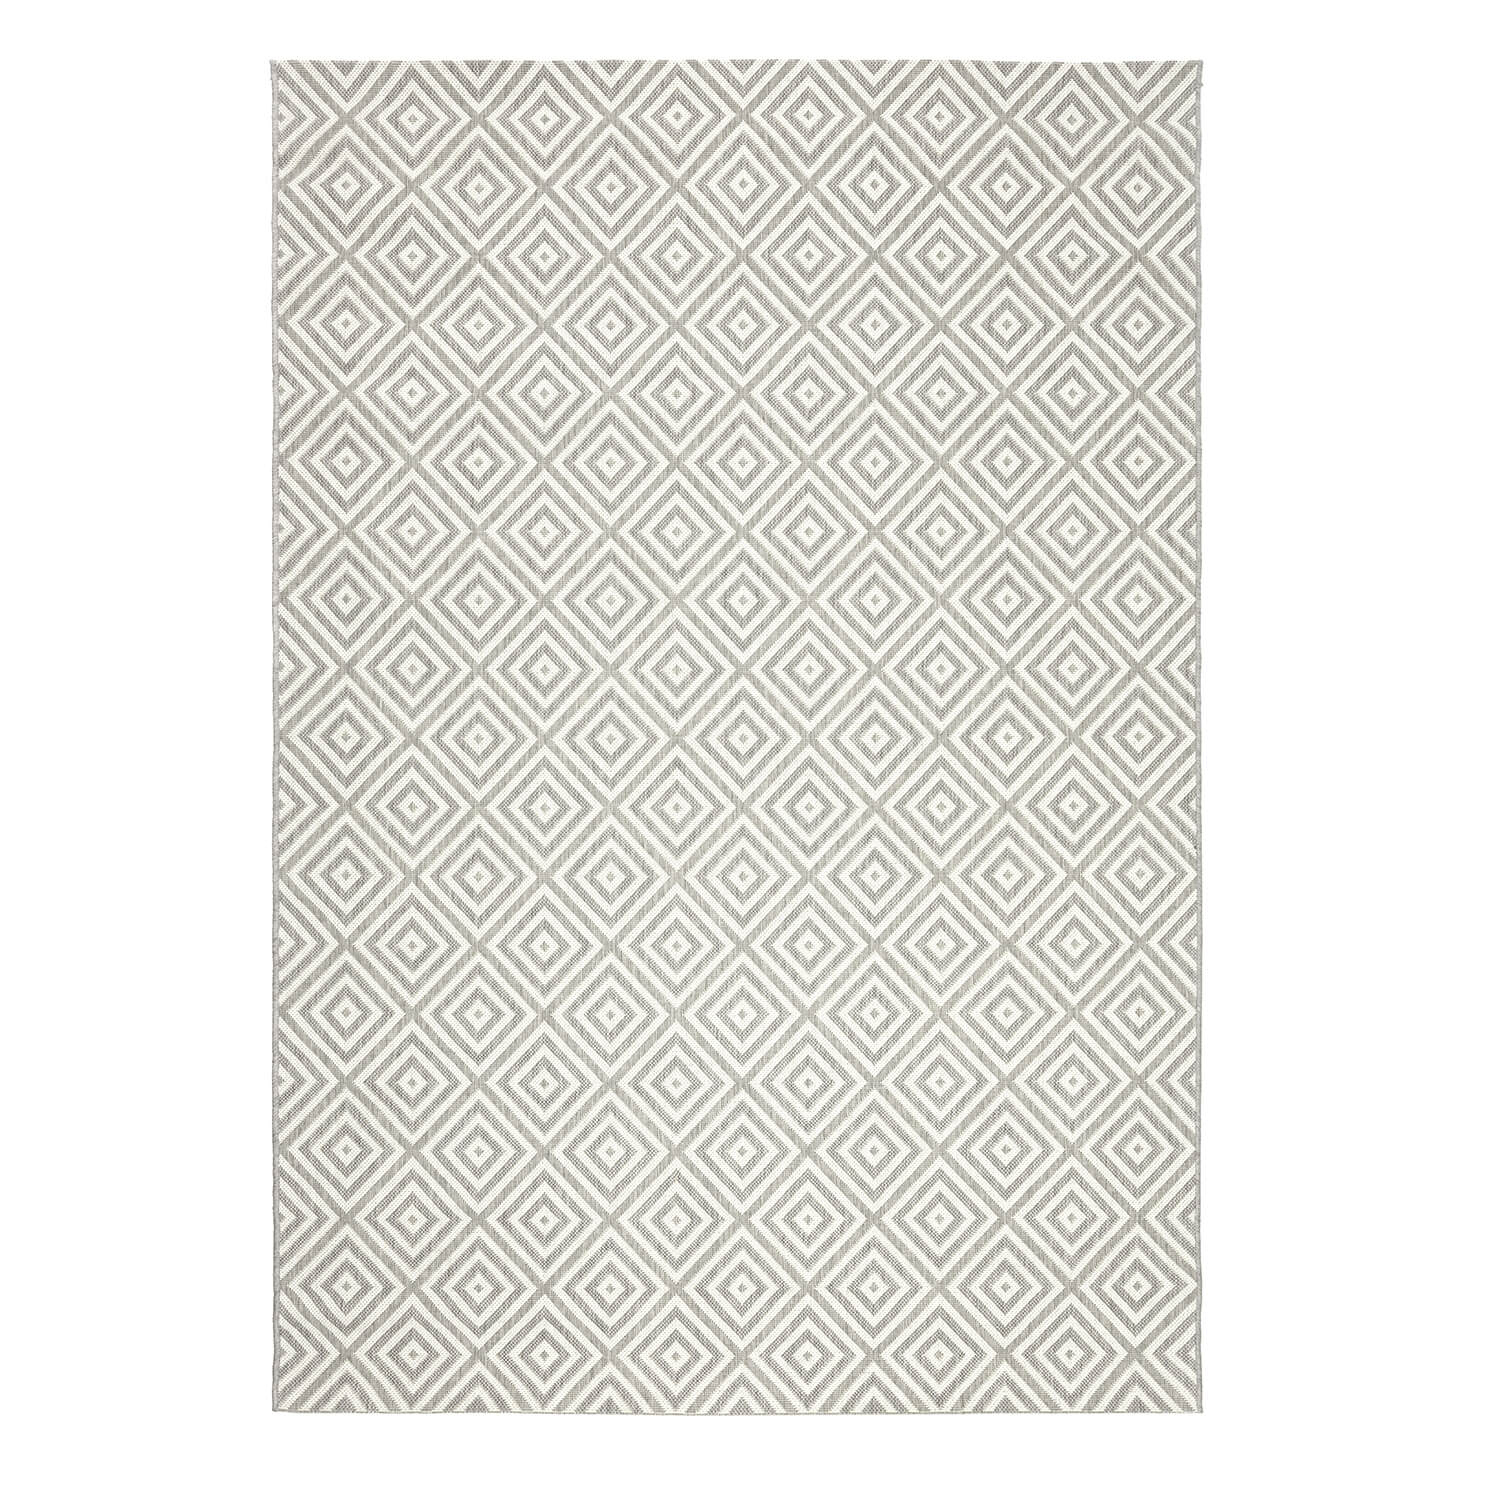 Tapete gris con diseño geométrico y textura rústica con estilo artesanal (Essenza 48607-637)